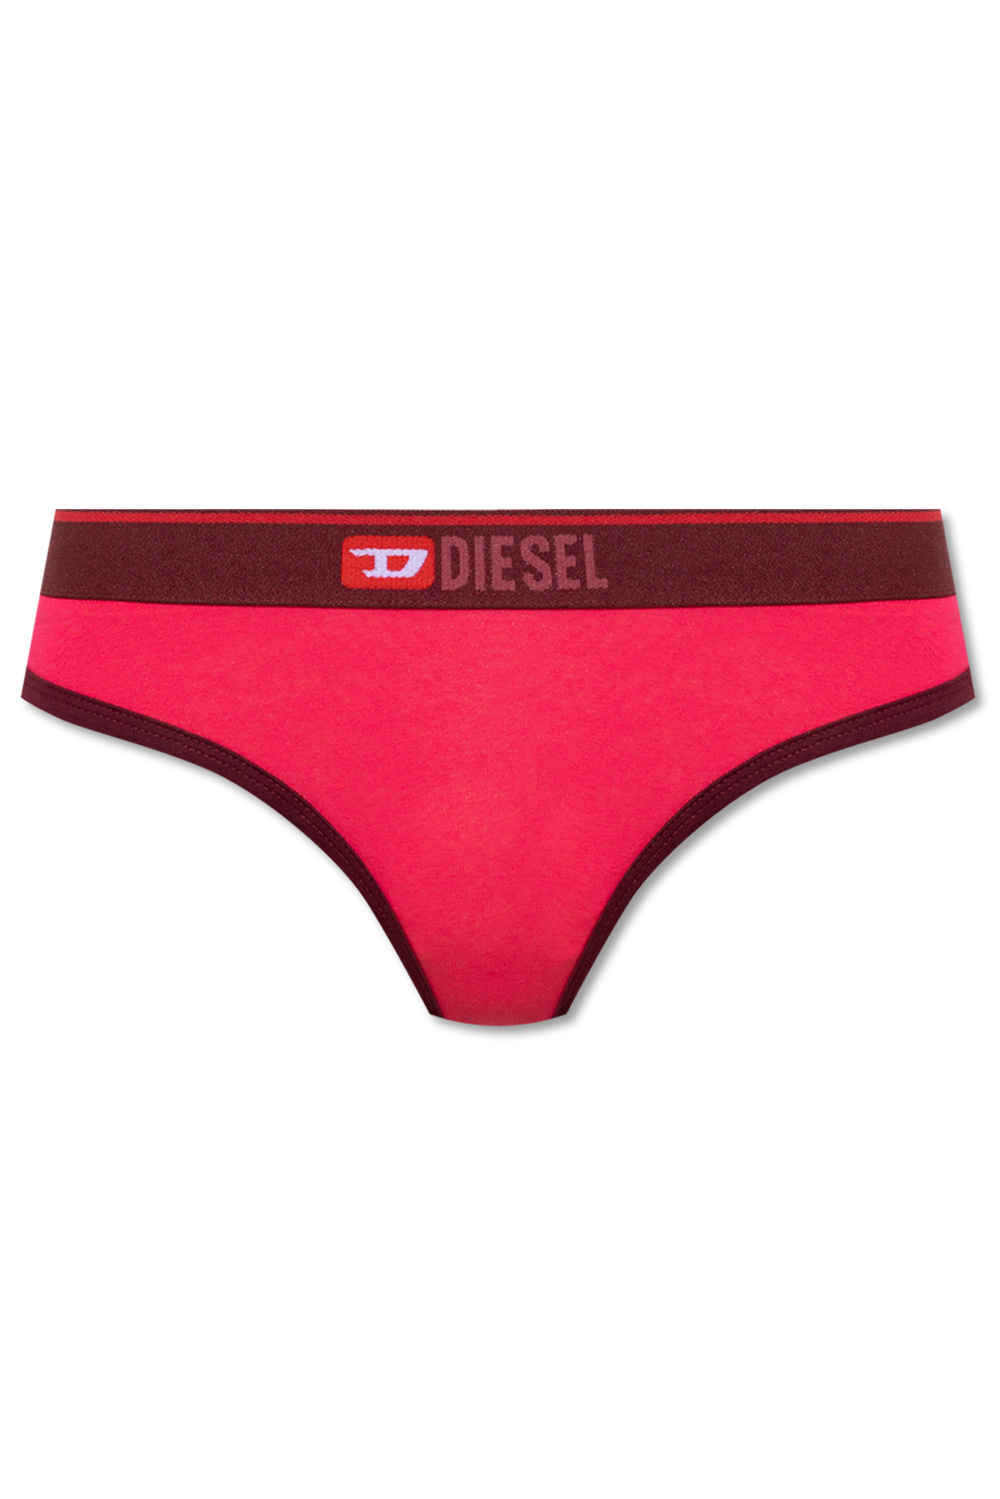 Diesel ‘Ufst-Starsy’ thong